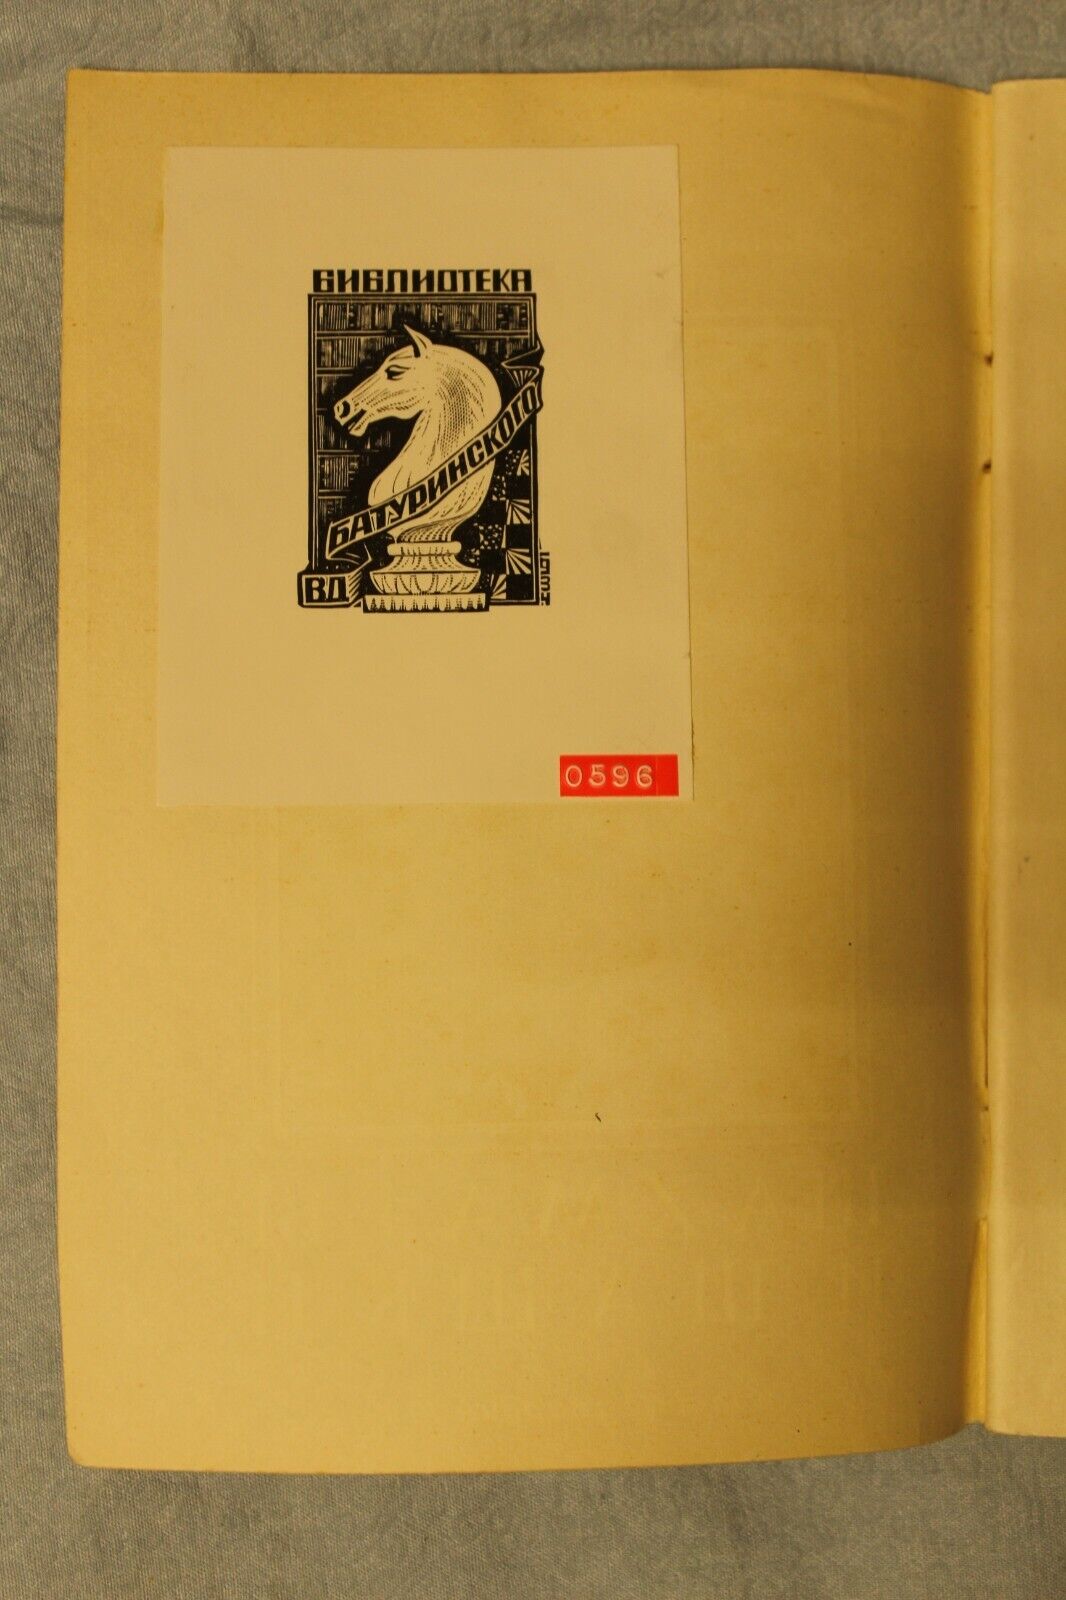 11685.Soviet Chess book Baturinsky-Karpov library: Chess and Checkers, 1951